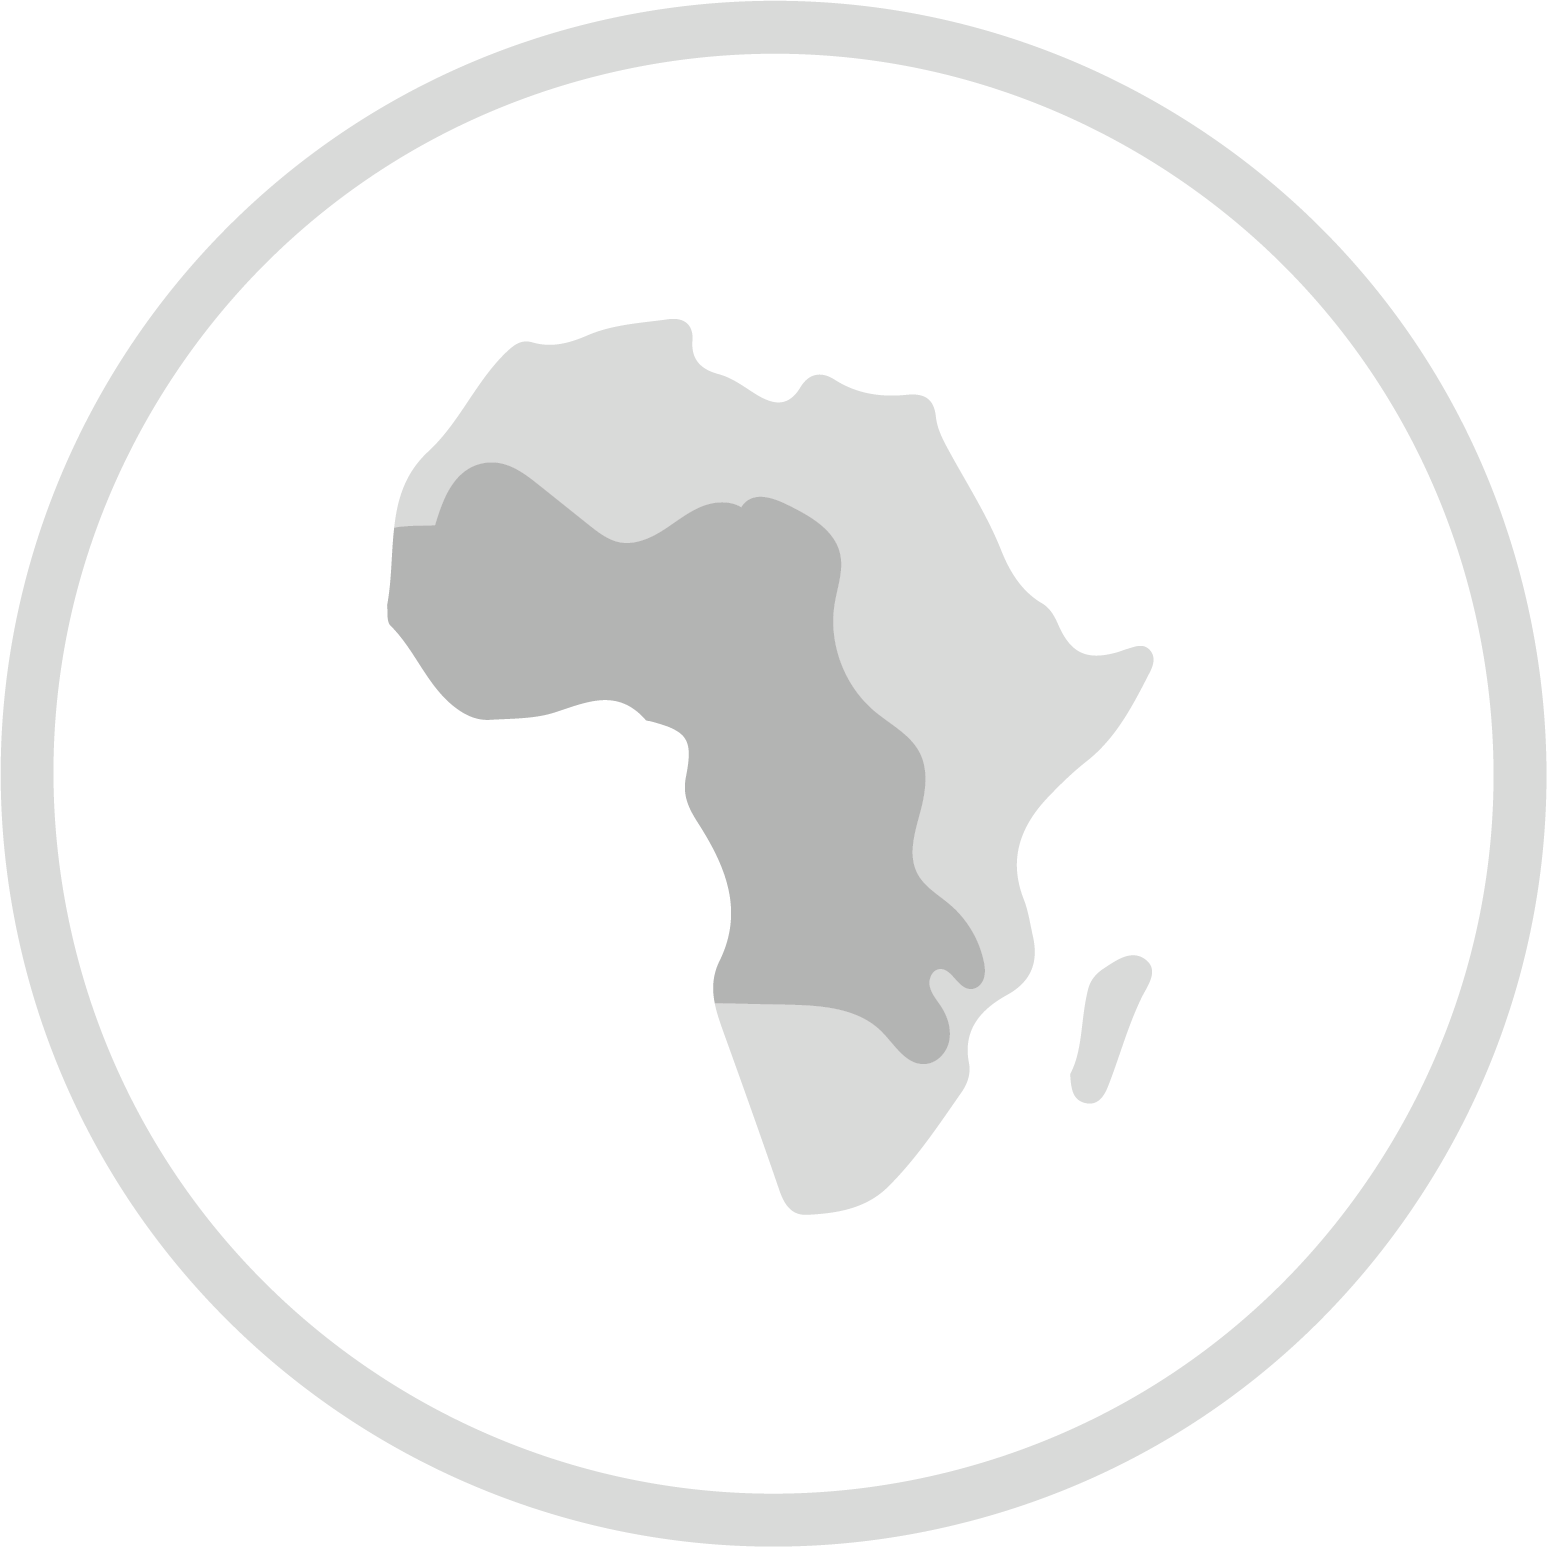 Afrique centrale et occidentale